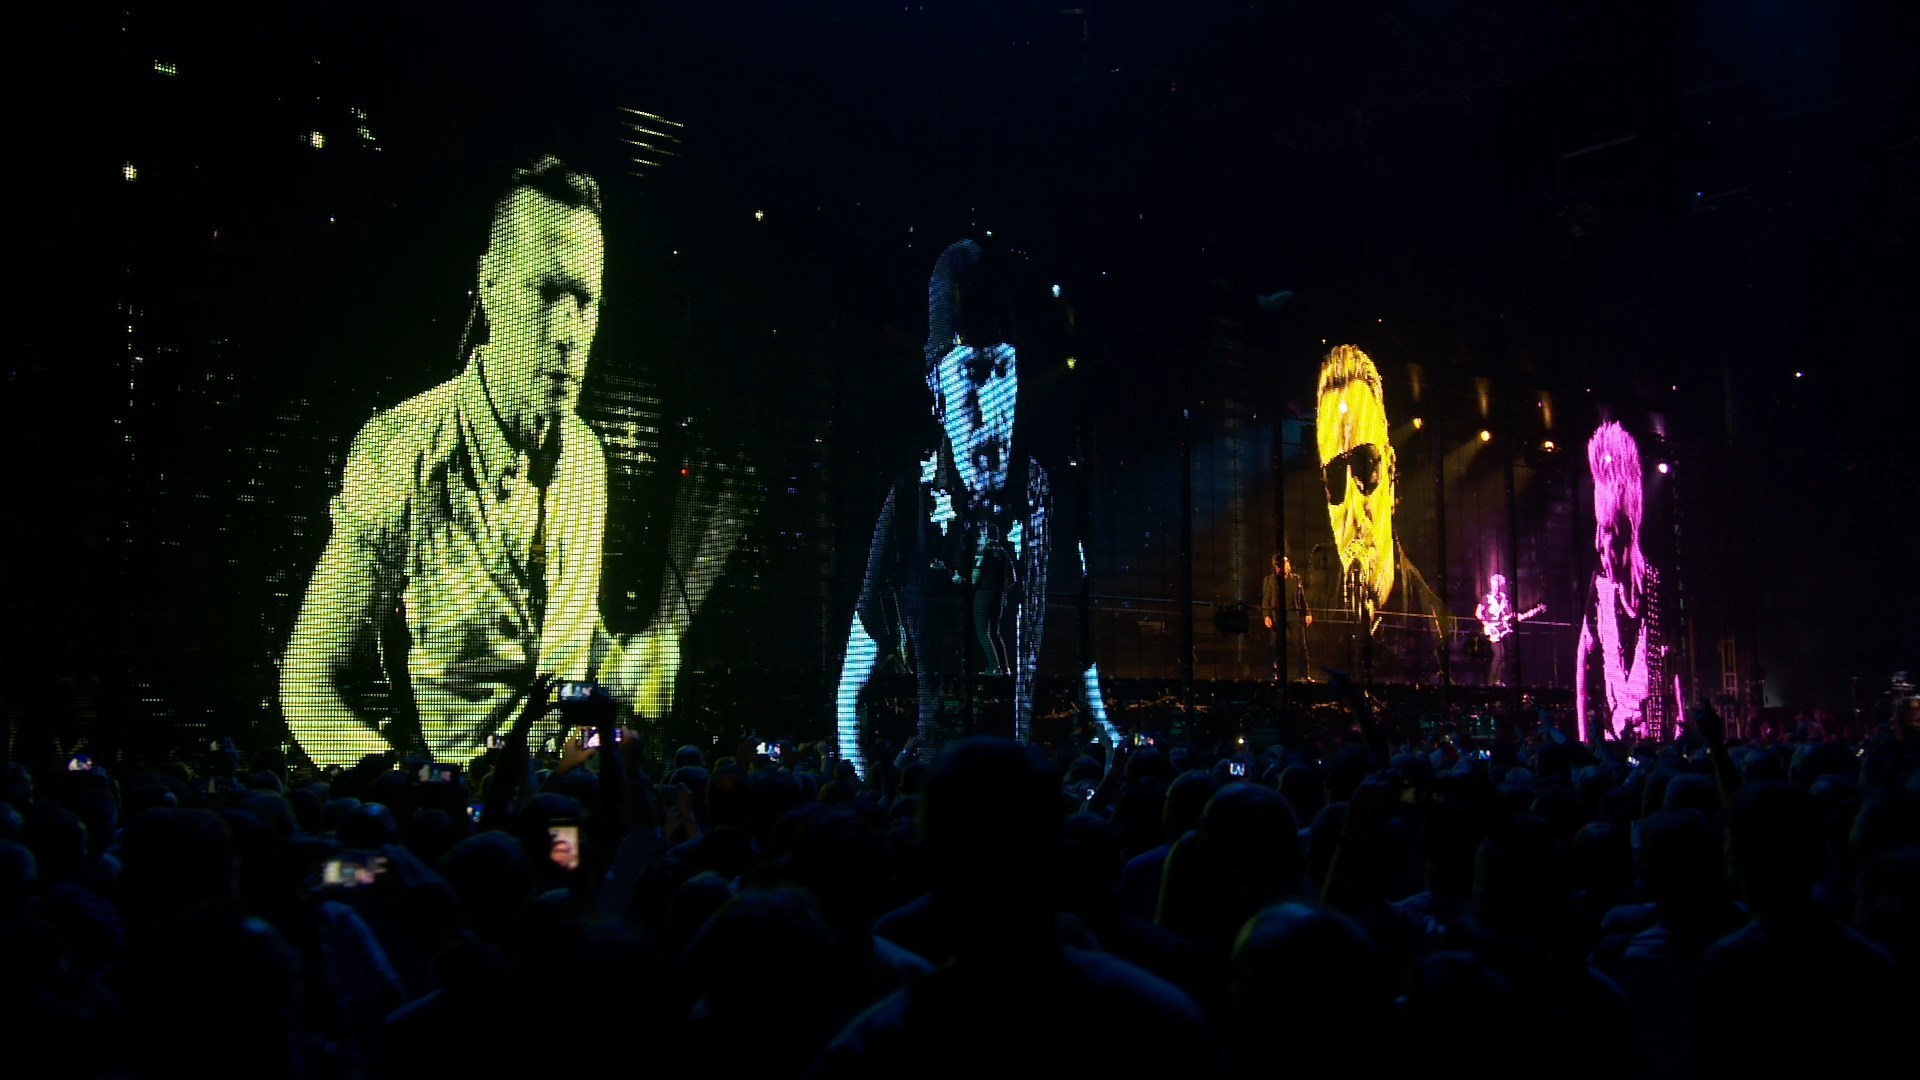 Скачать обои U2: Невенность + Опыт на телефон бесплатно